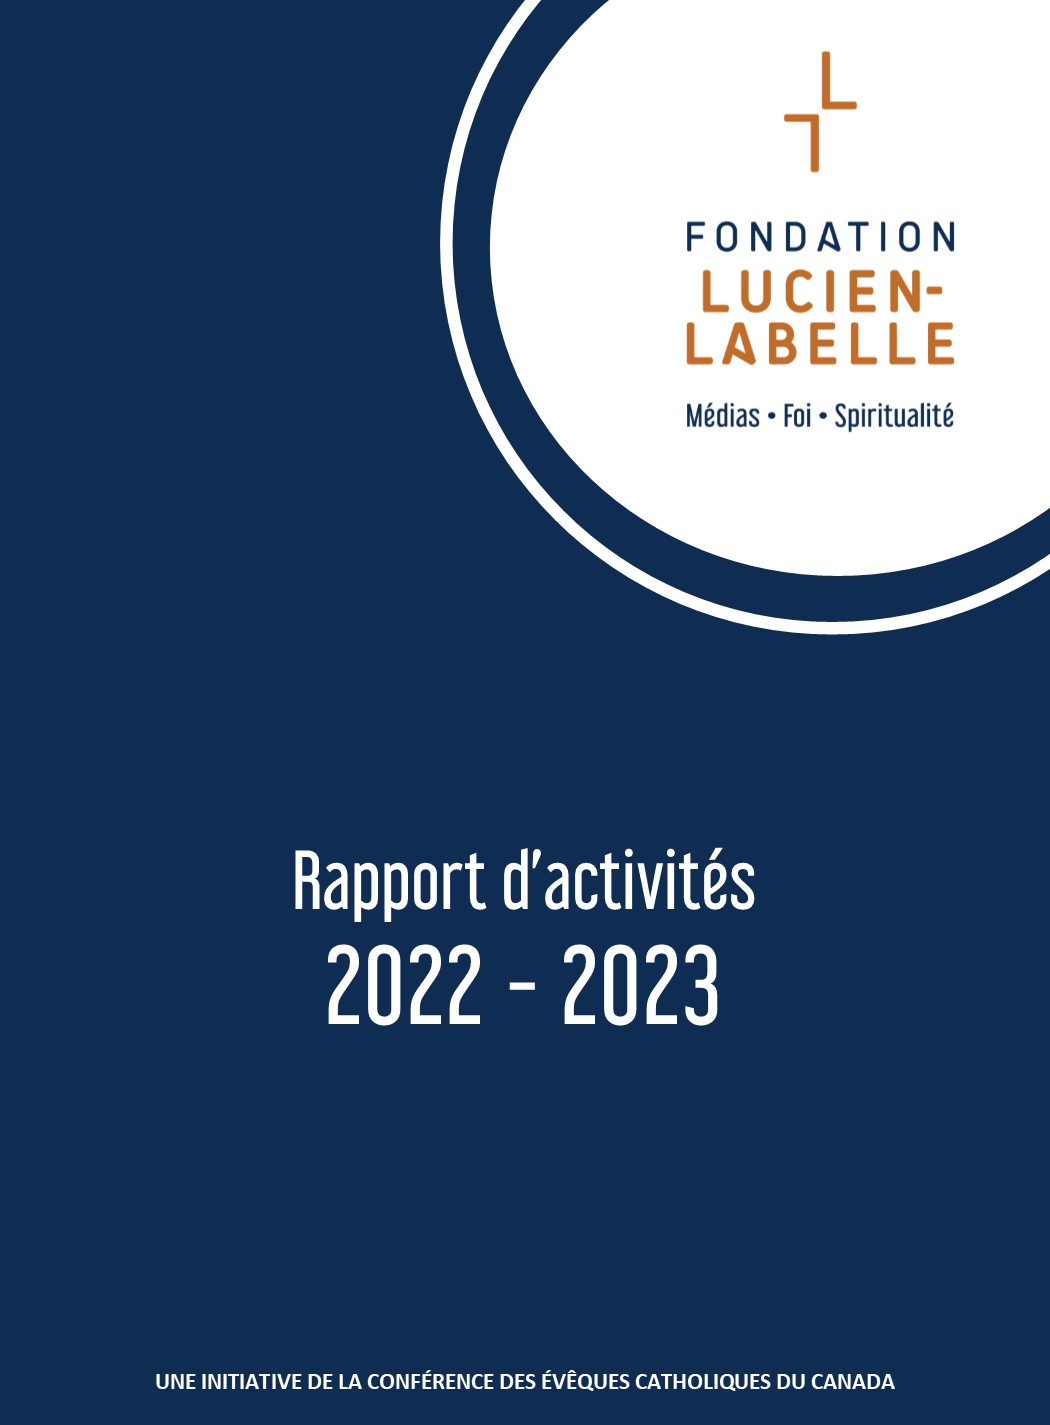 Rapport_activites_2022-2023_UNE.jpg